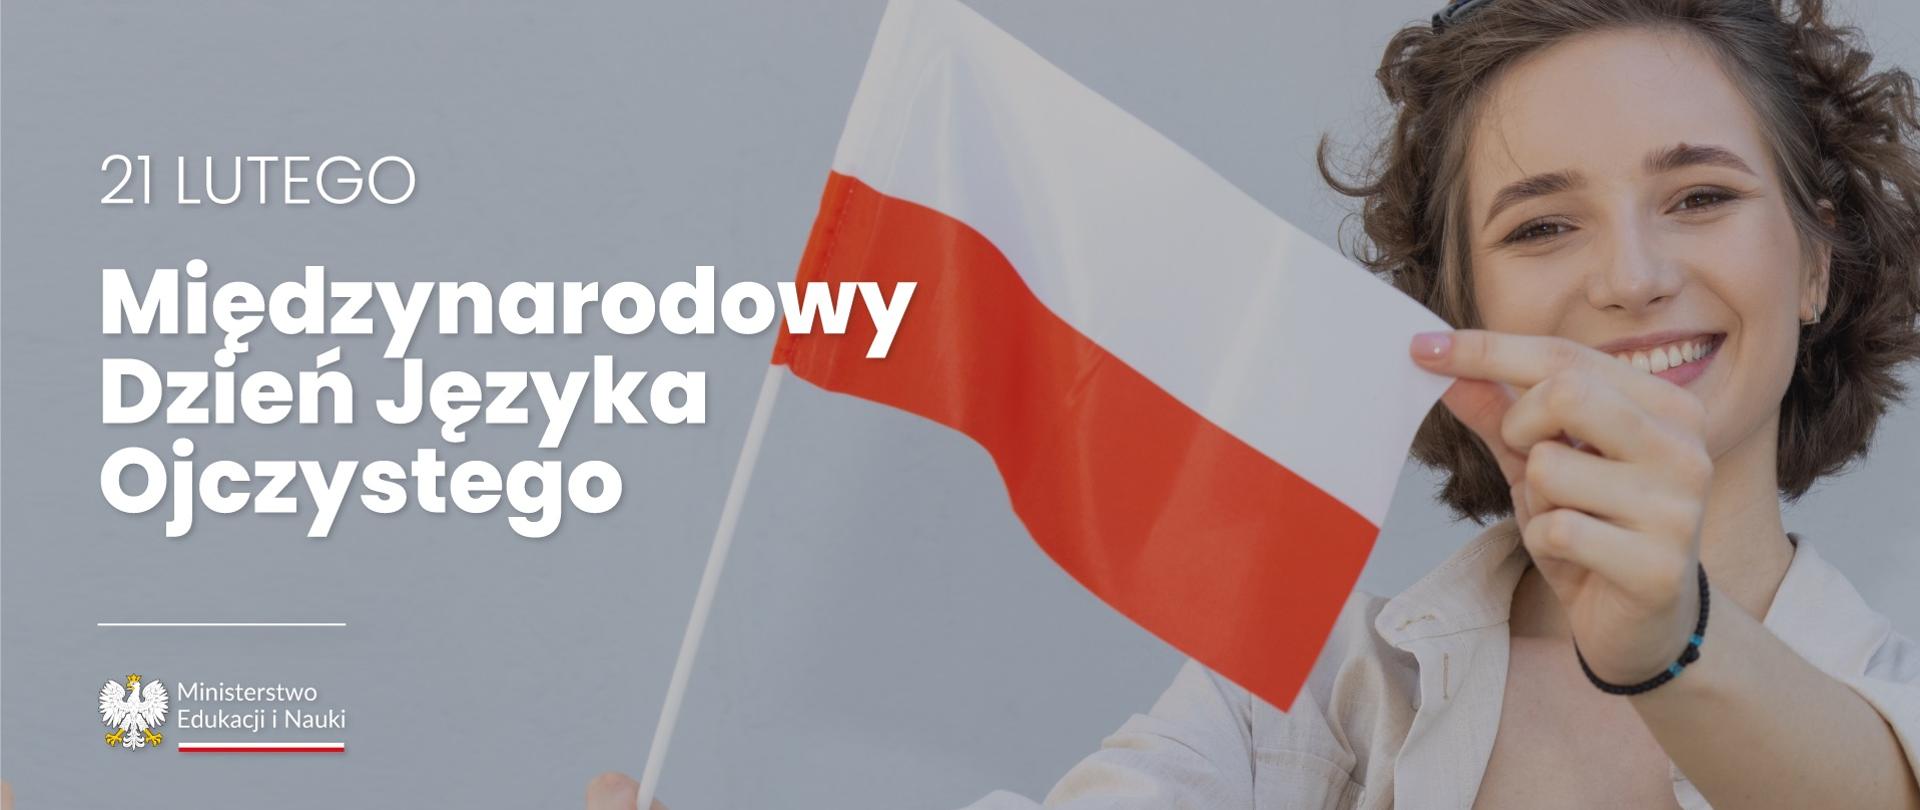 Grafika - na jasnoszarym tle młoda dziewczyna trzymająca polską flagę i napis 21 lutego - Międzynarodowy Dzień Języka Ojczystego.